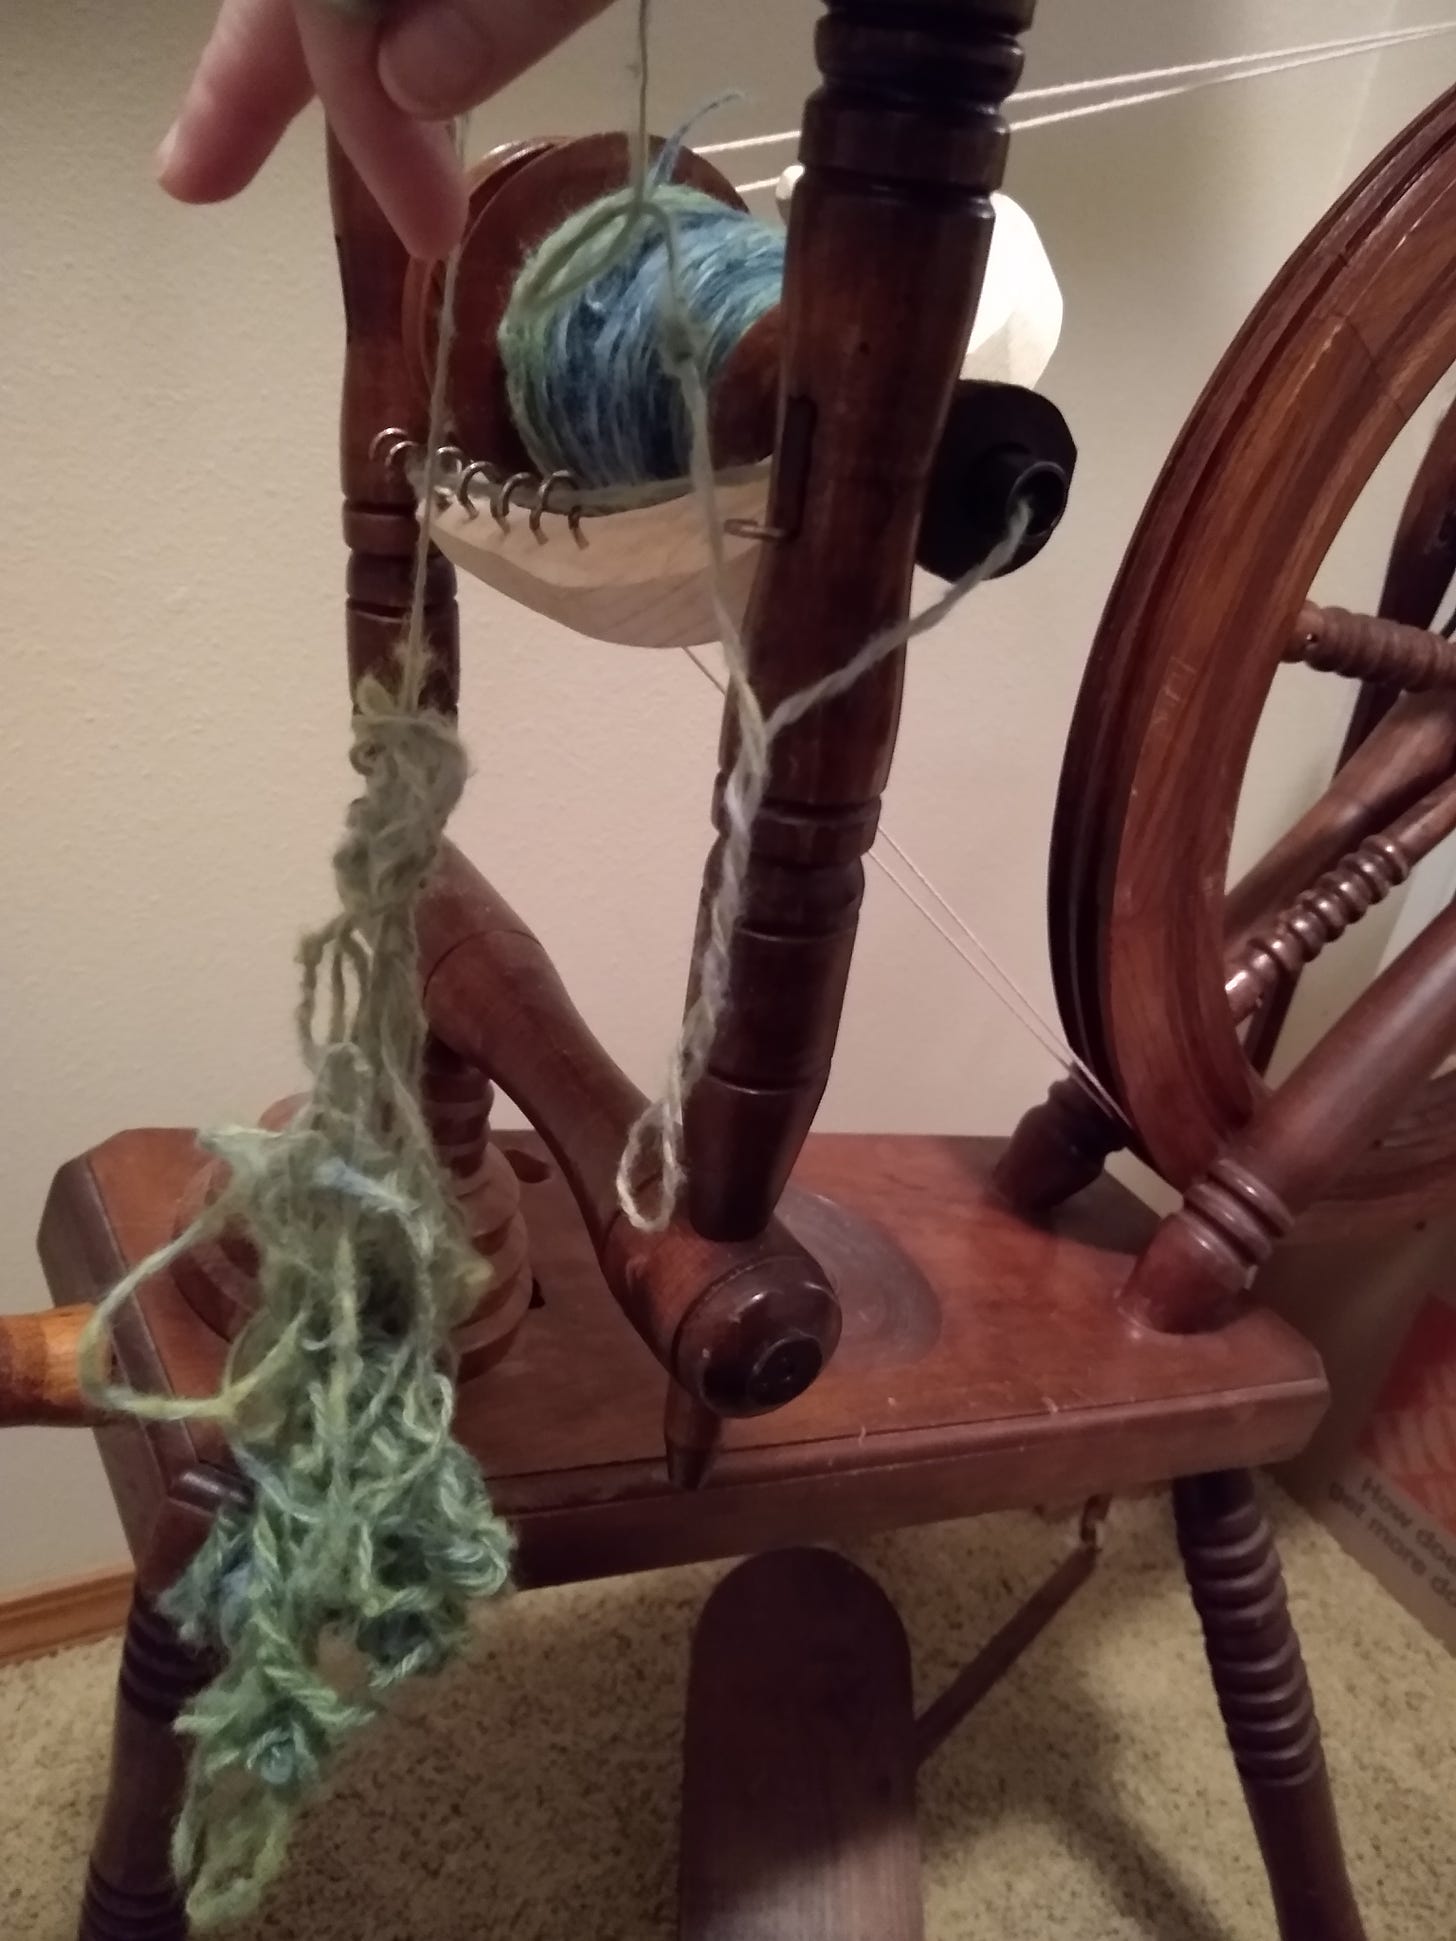 Green yarn tangle